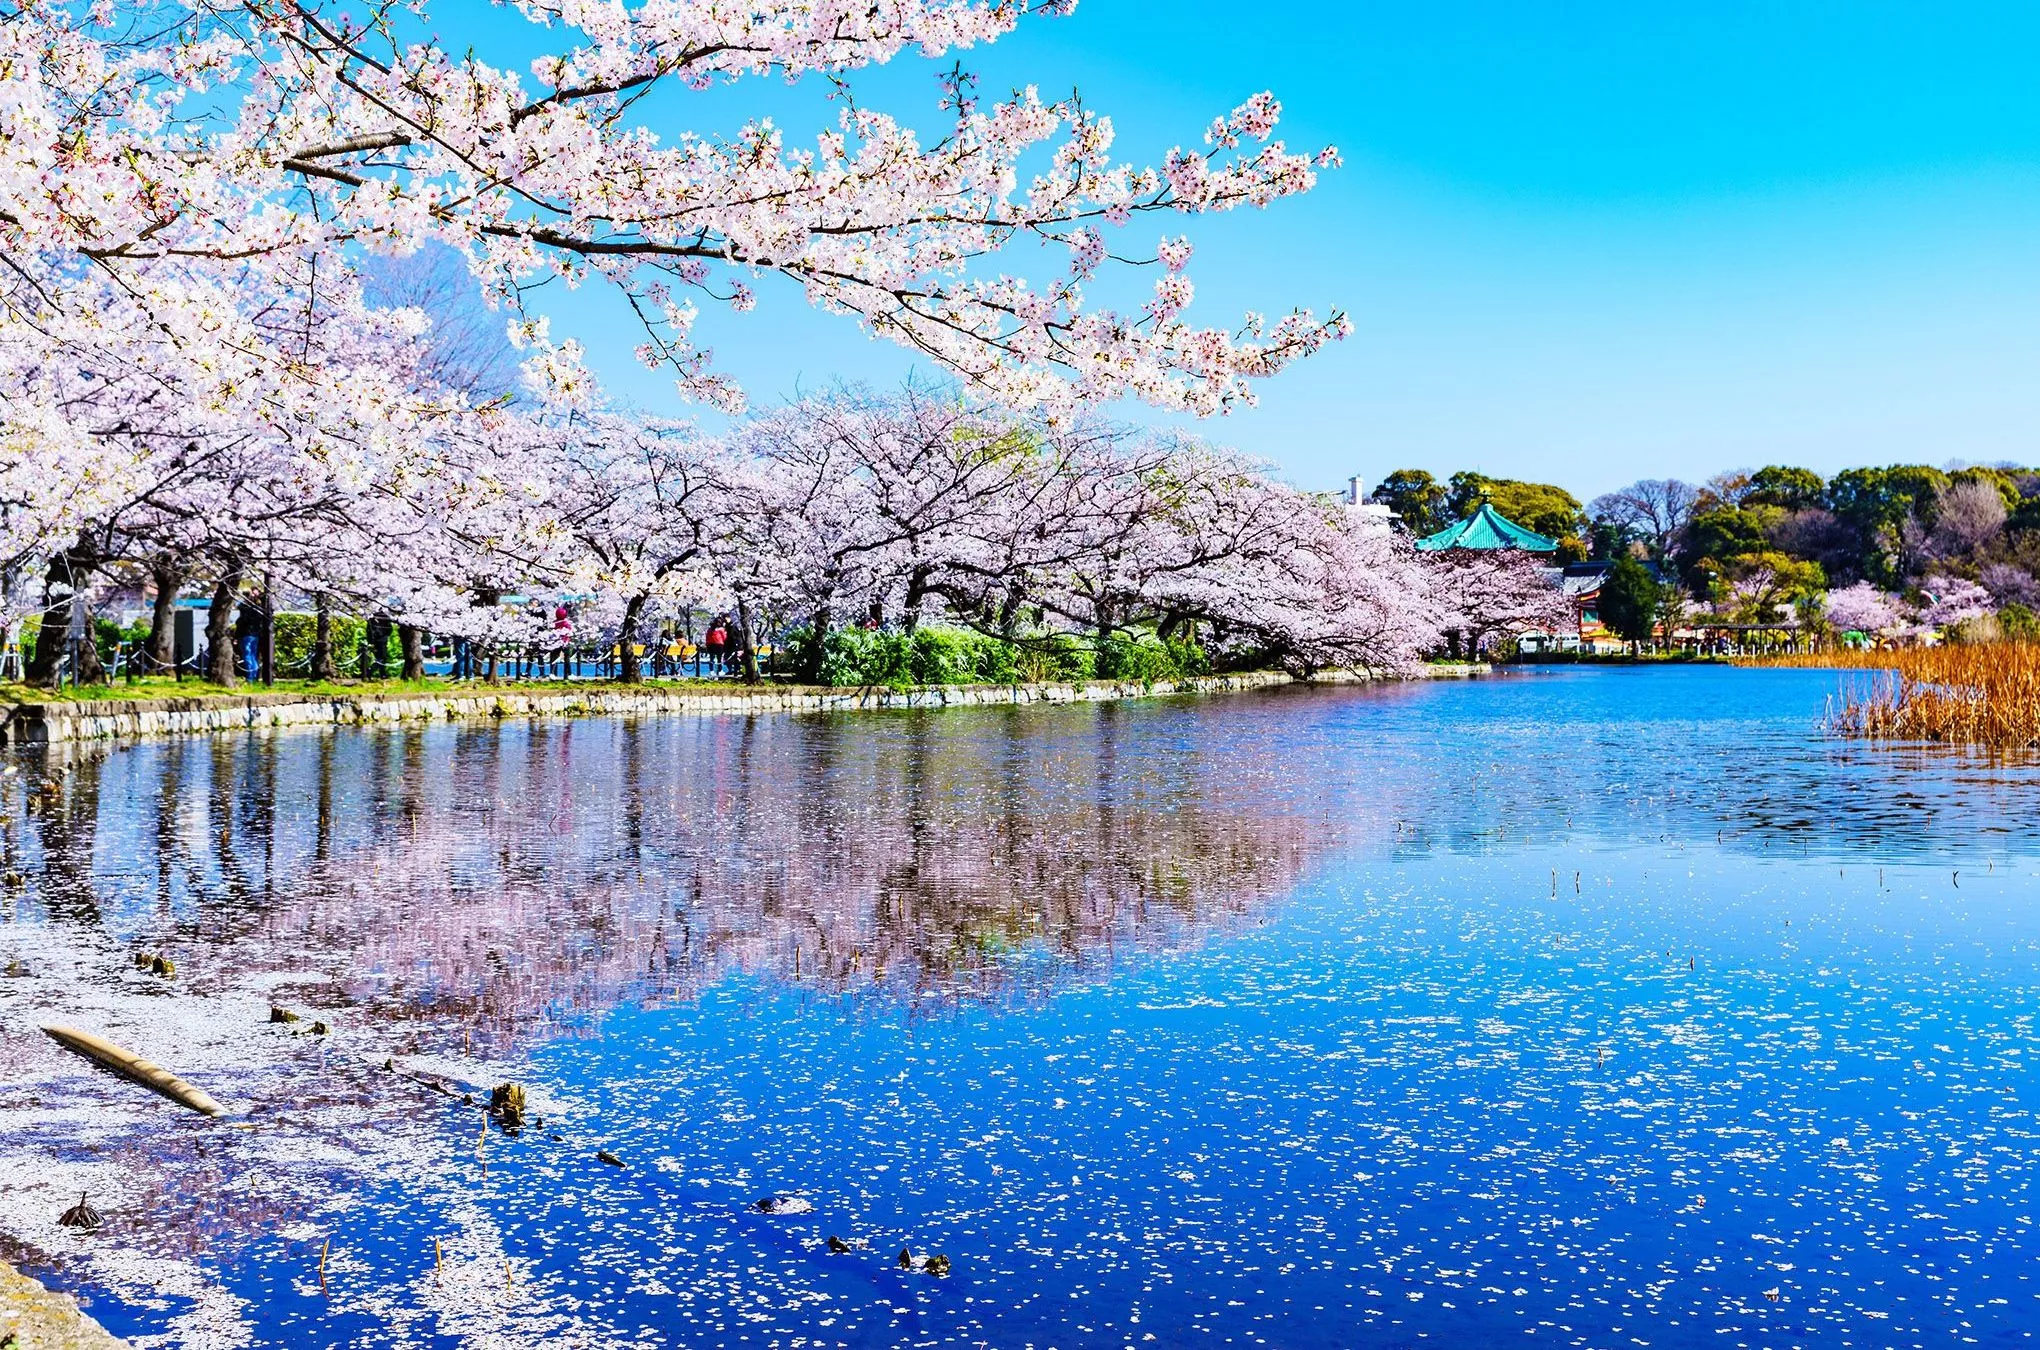 Am Shinobazu-Teich im Ueno-Park, dem ältesten öffentlichen Park Japans